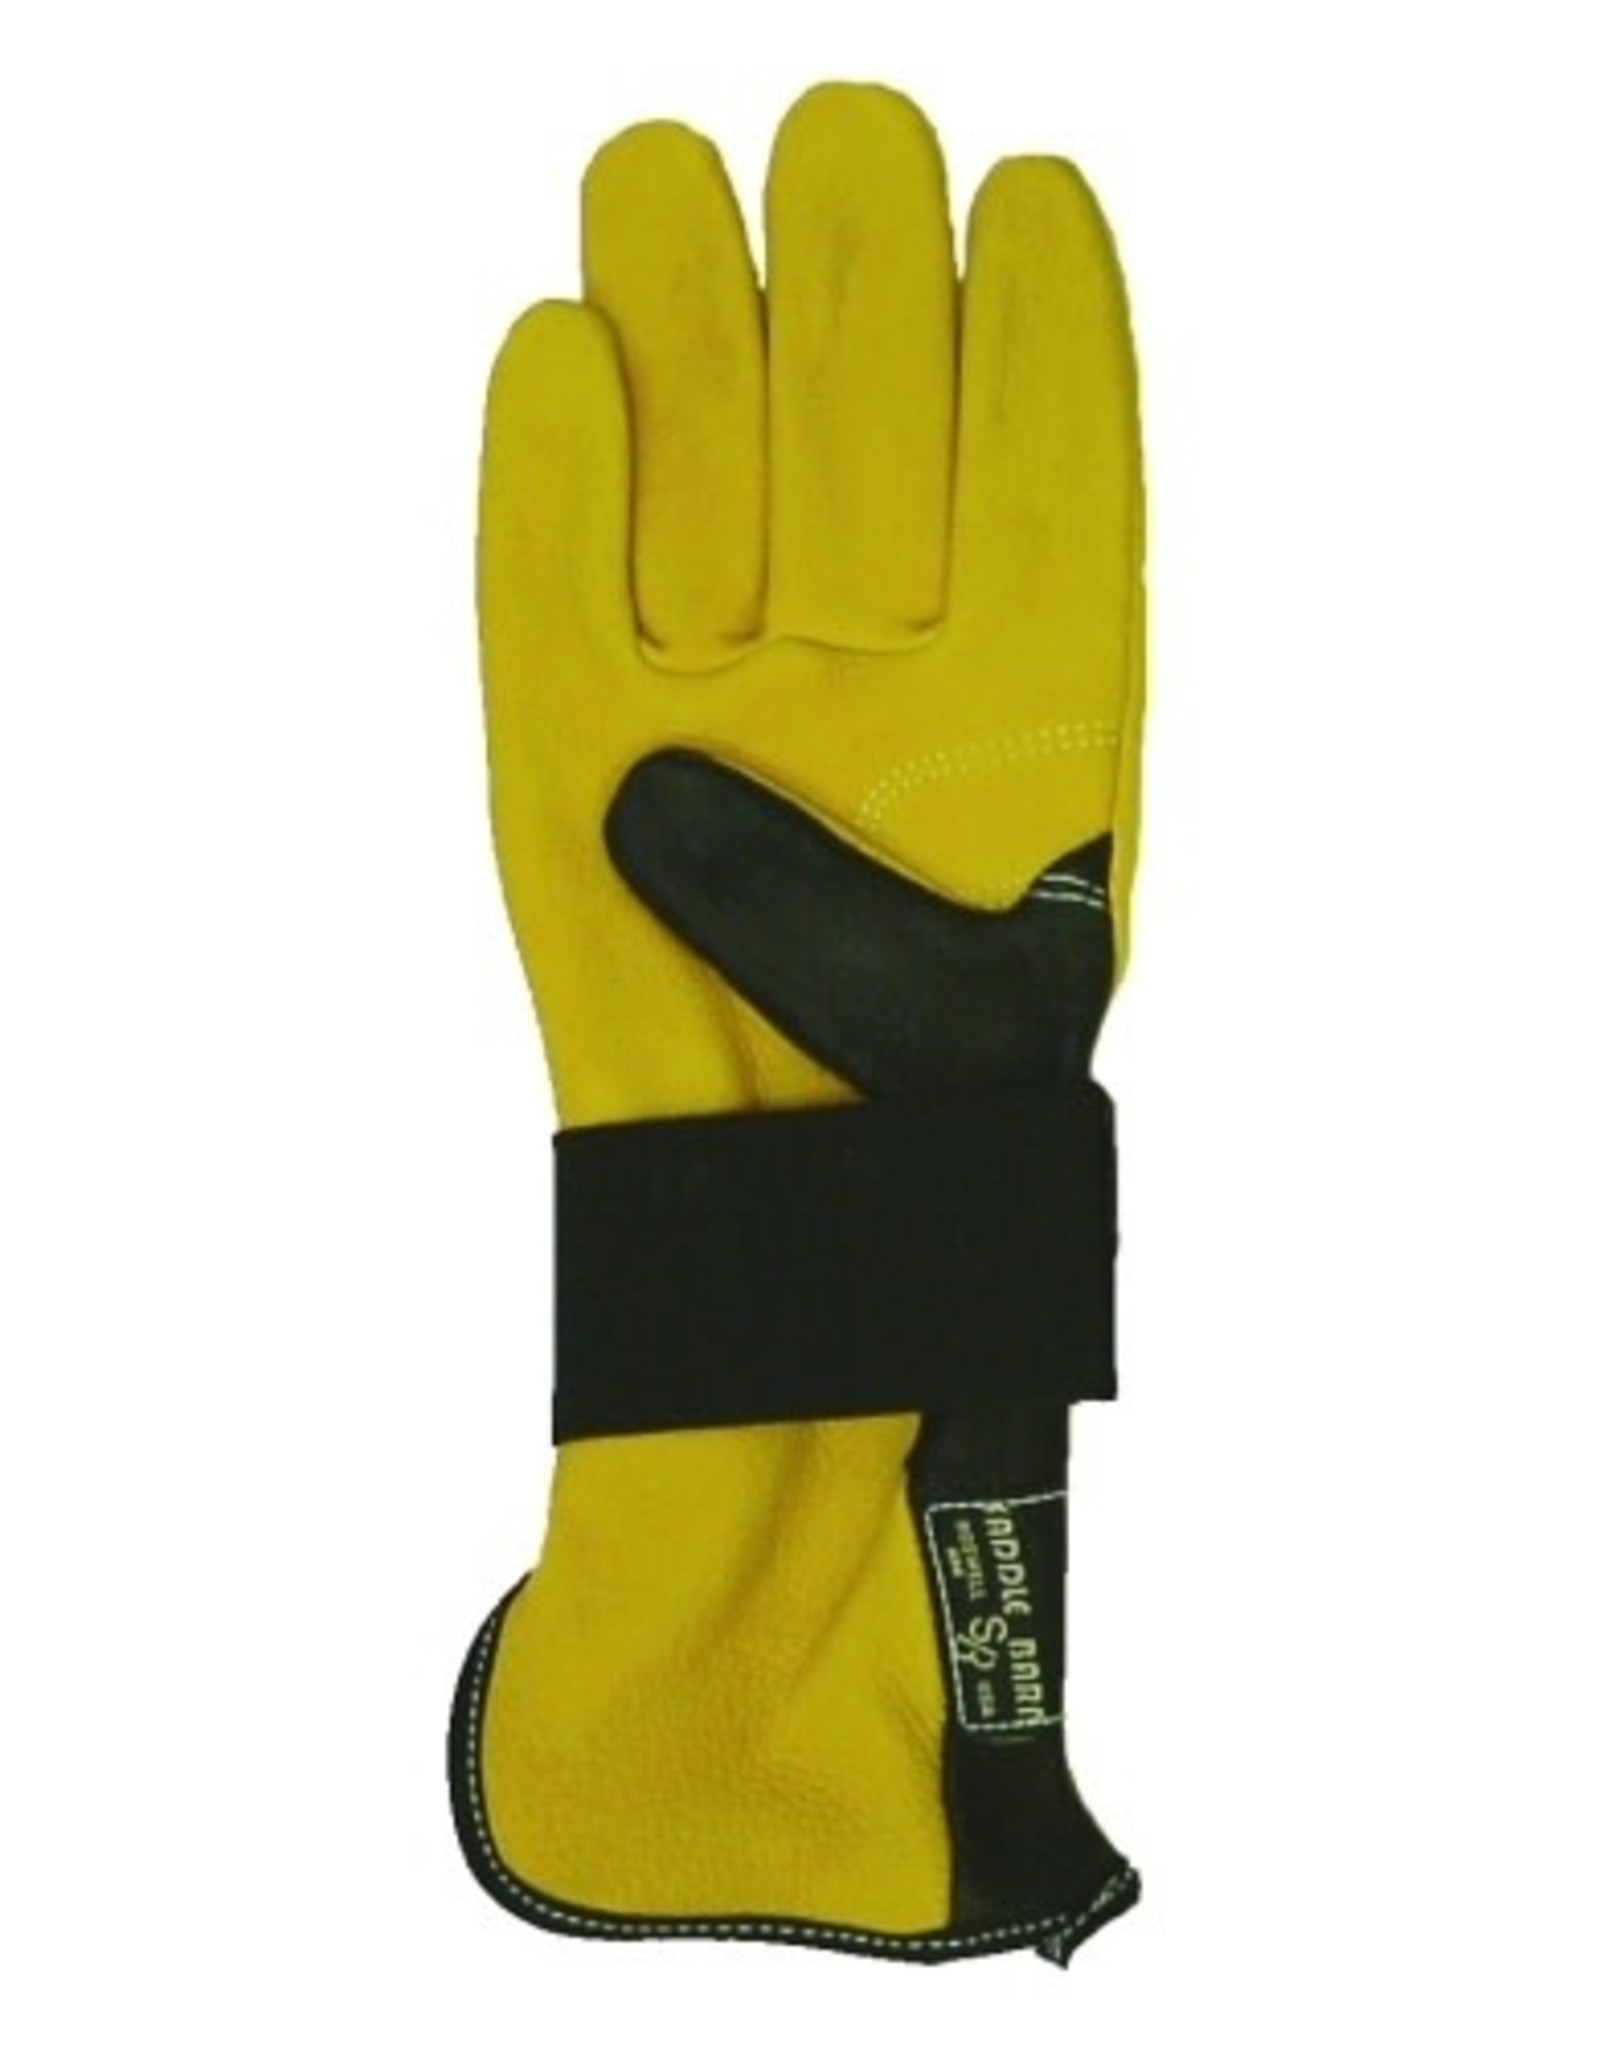 Left Hand Bull Gloves